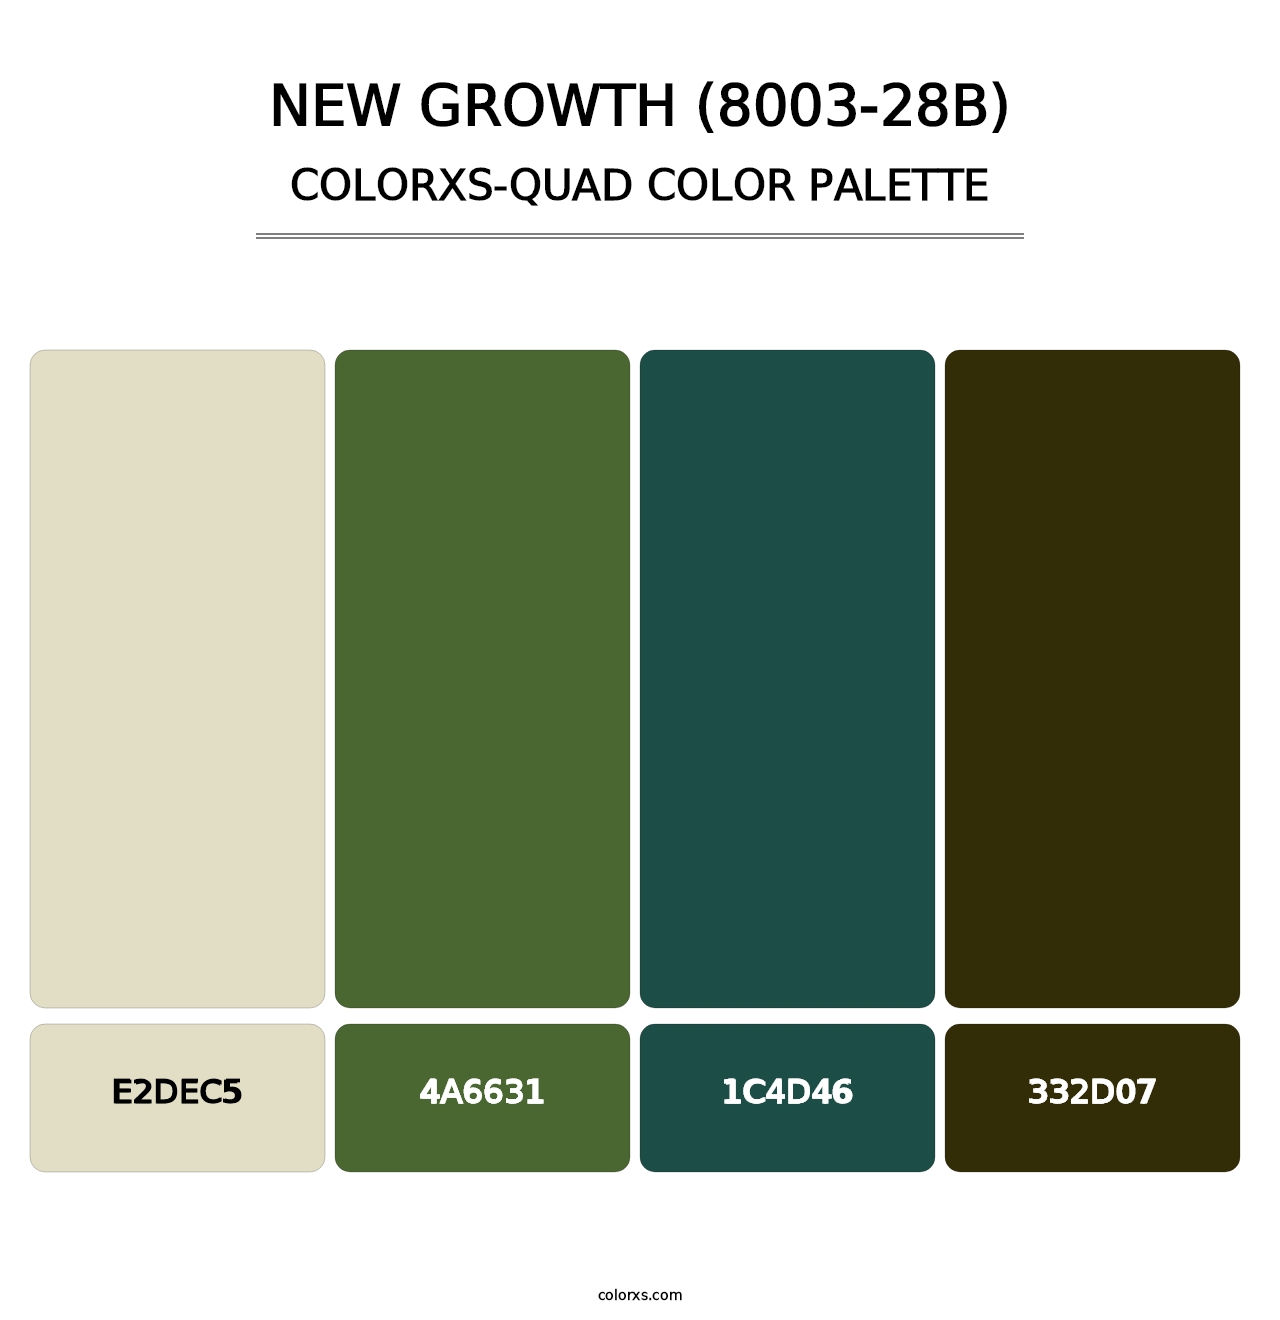 New Growth (8003-28B) - Colorxs Quad Palette